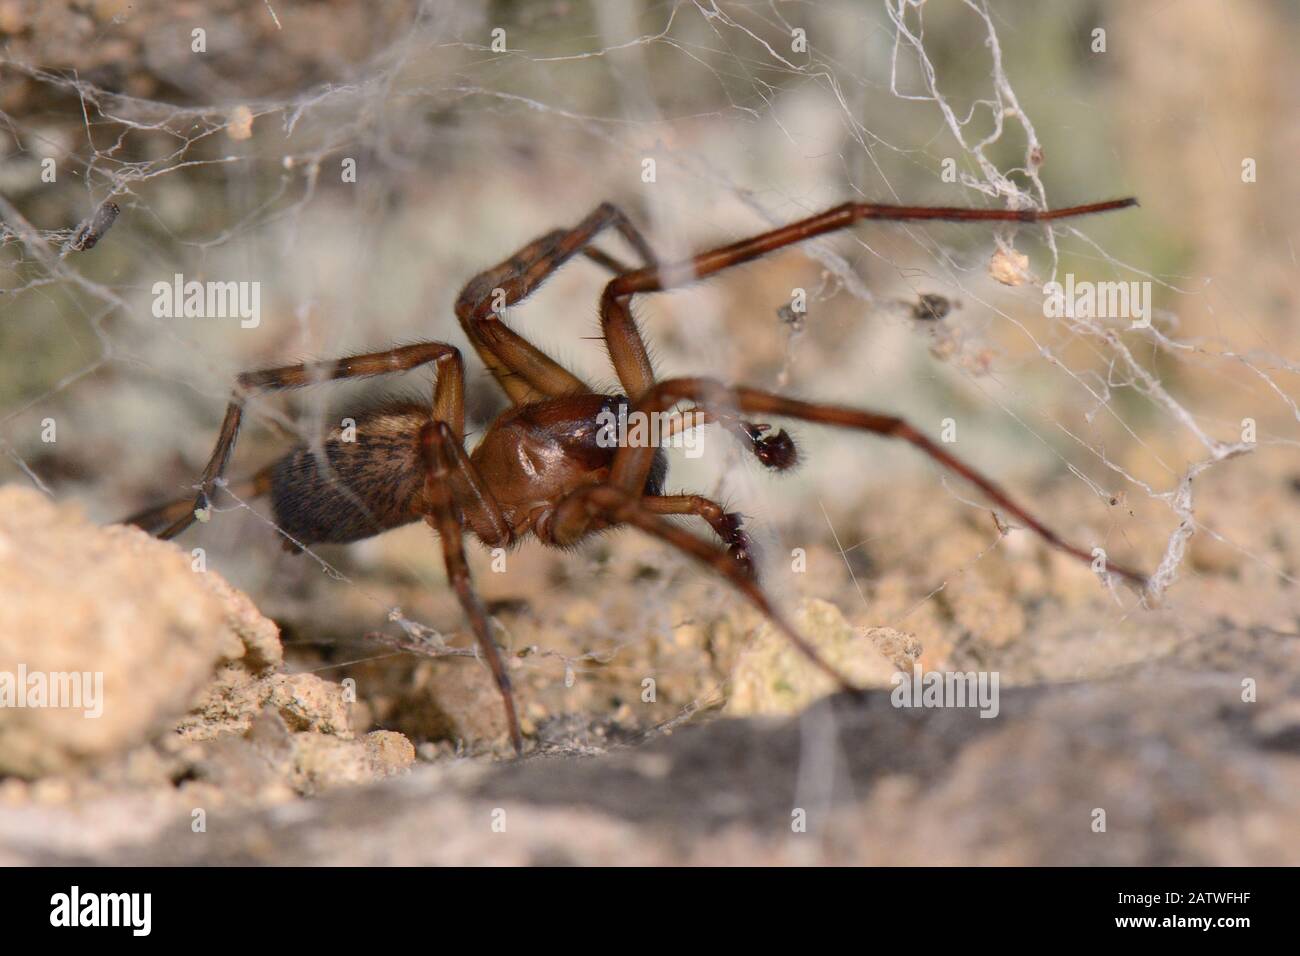 Gemeinsame Spitze Weaver / Spitze-Webbeter Spinne (Amaurobius similis) männlich in seinem Netz in einer alten Steinmauer nachts, Wiltshire, Großbritannien, September. Stockfoto